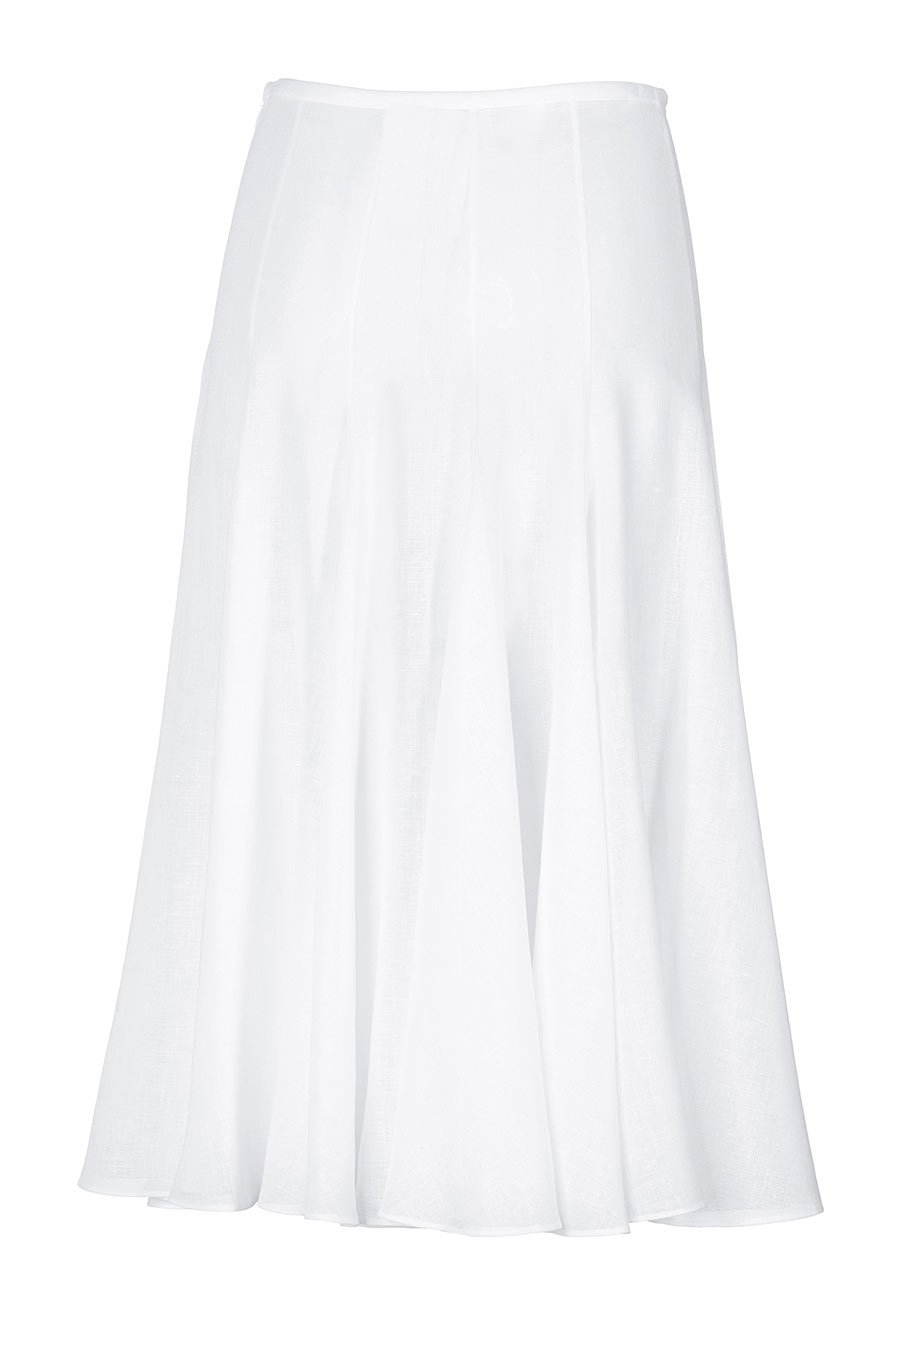 White Plus Size Skirt 121